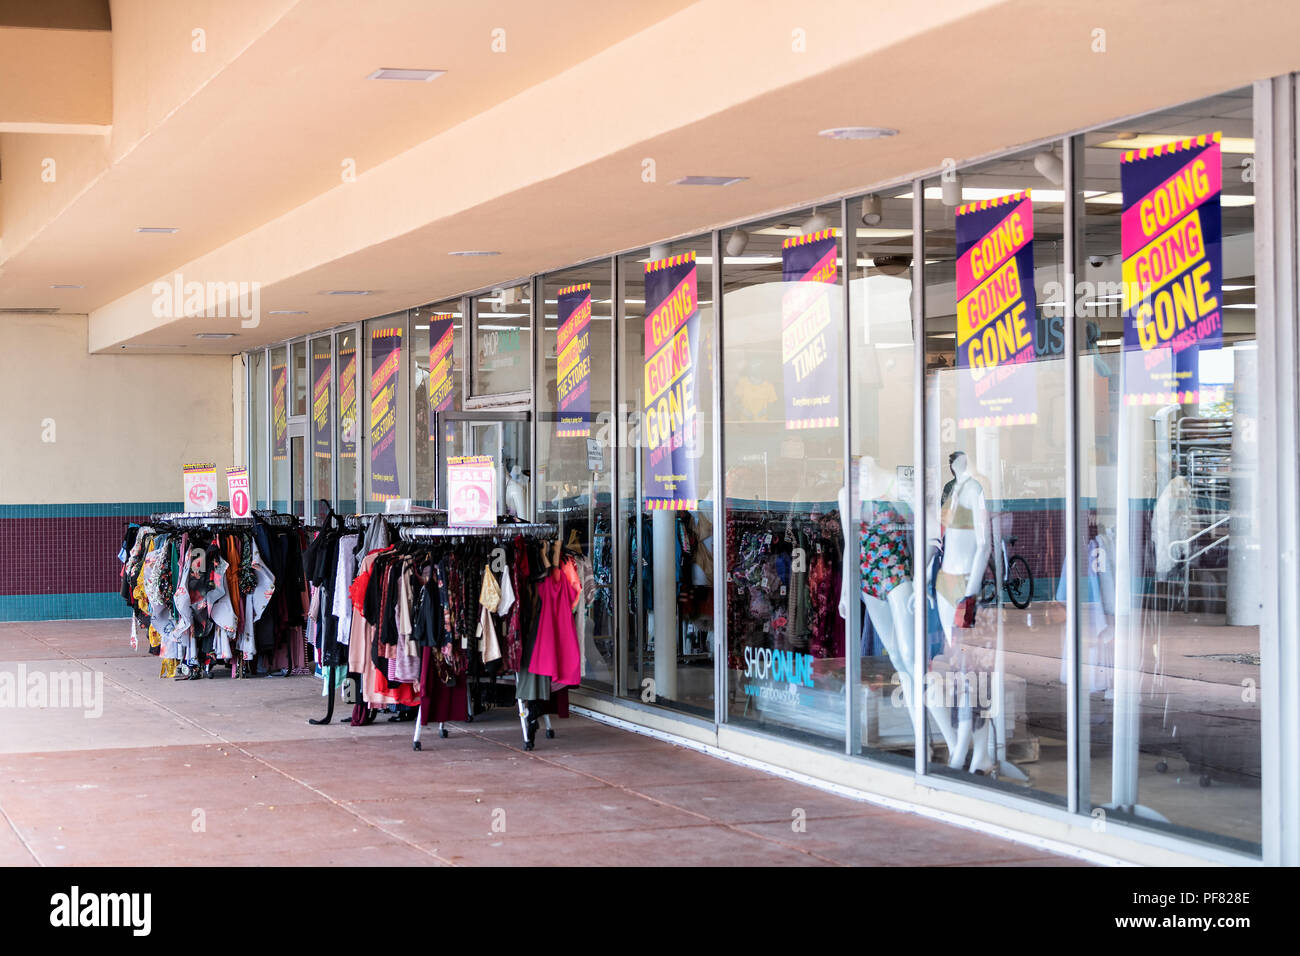 Key West, Stati Uniti d'America - 1 Maggio 2018: Rainbow Negozi Negozio di specialità, storefront in all'aperto centro commerciale di vendita abbigliamento sconto, vestiti, abbigliamento in vendita, p Foto Stock